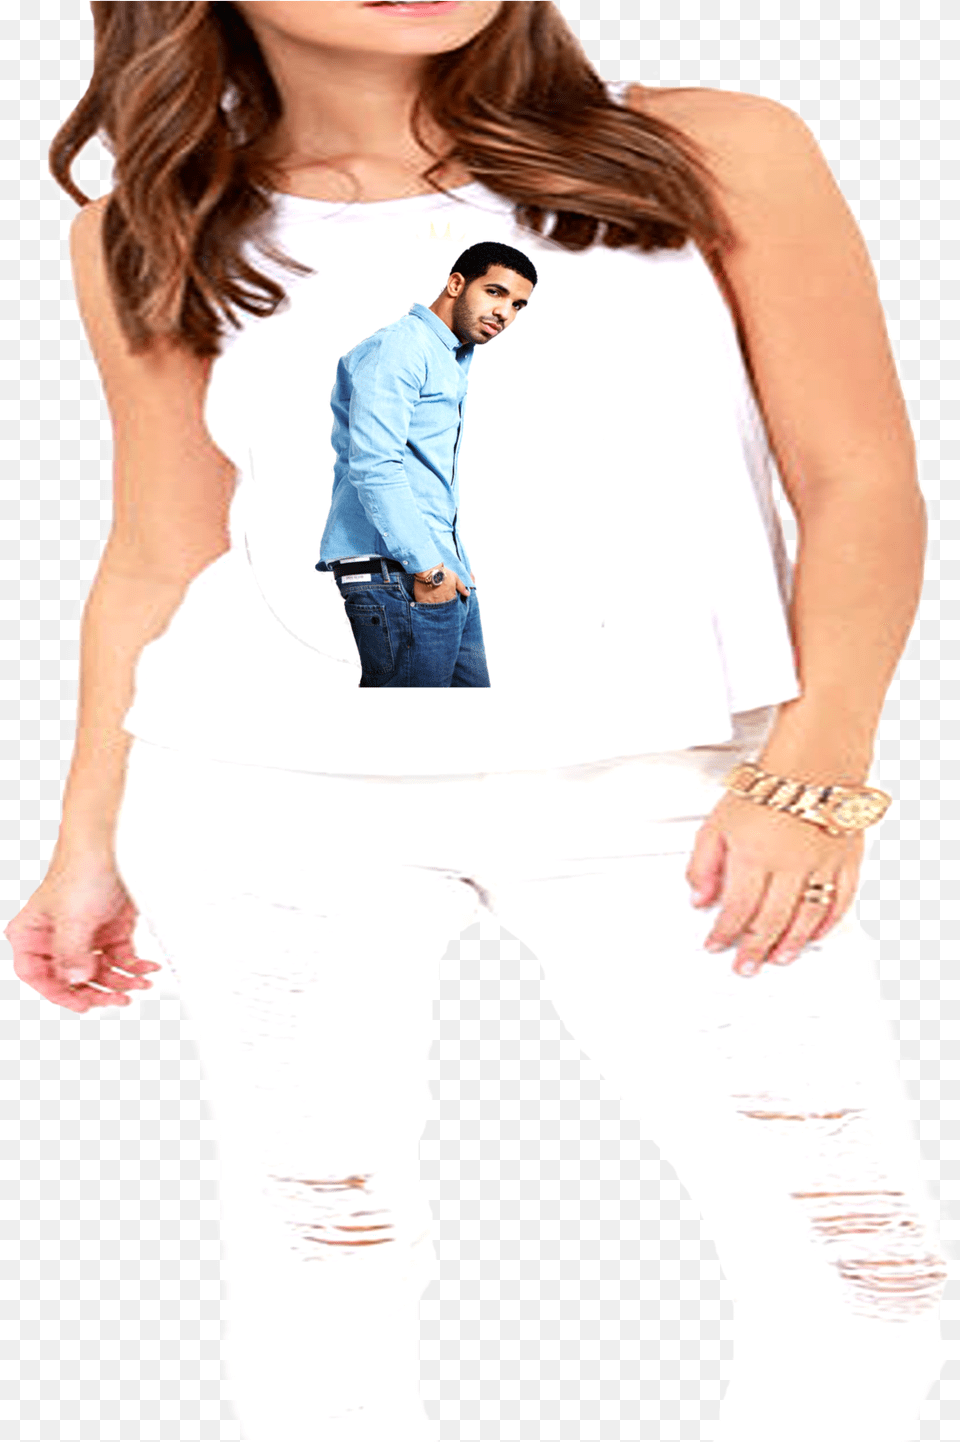 Drake Views Tank Top Bing Images, Formal Wear, Pants, Clothing, Jeans Png Image